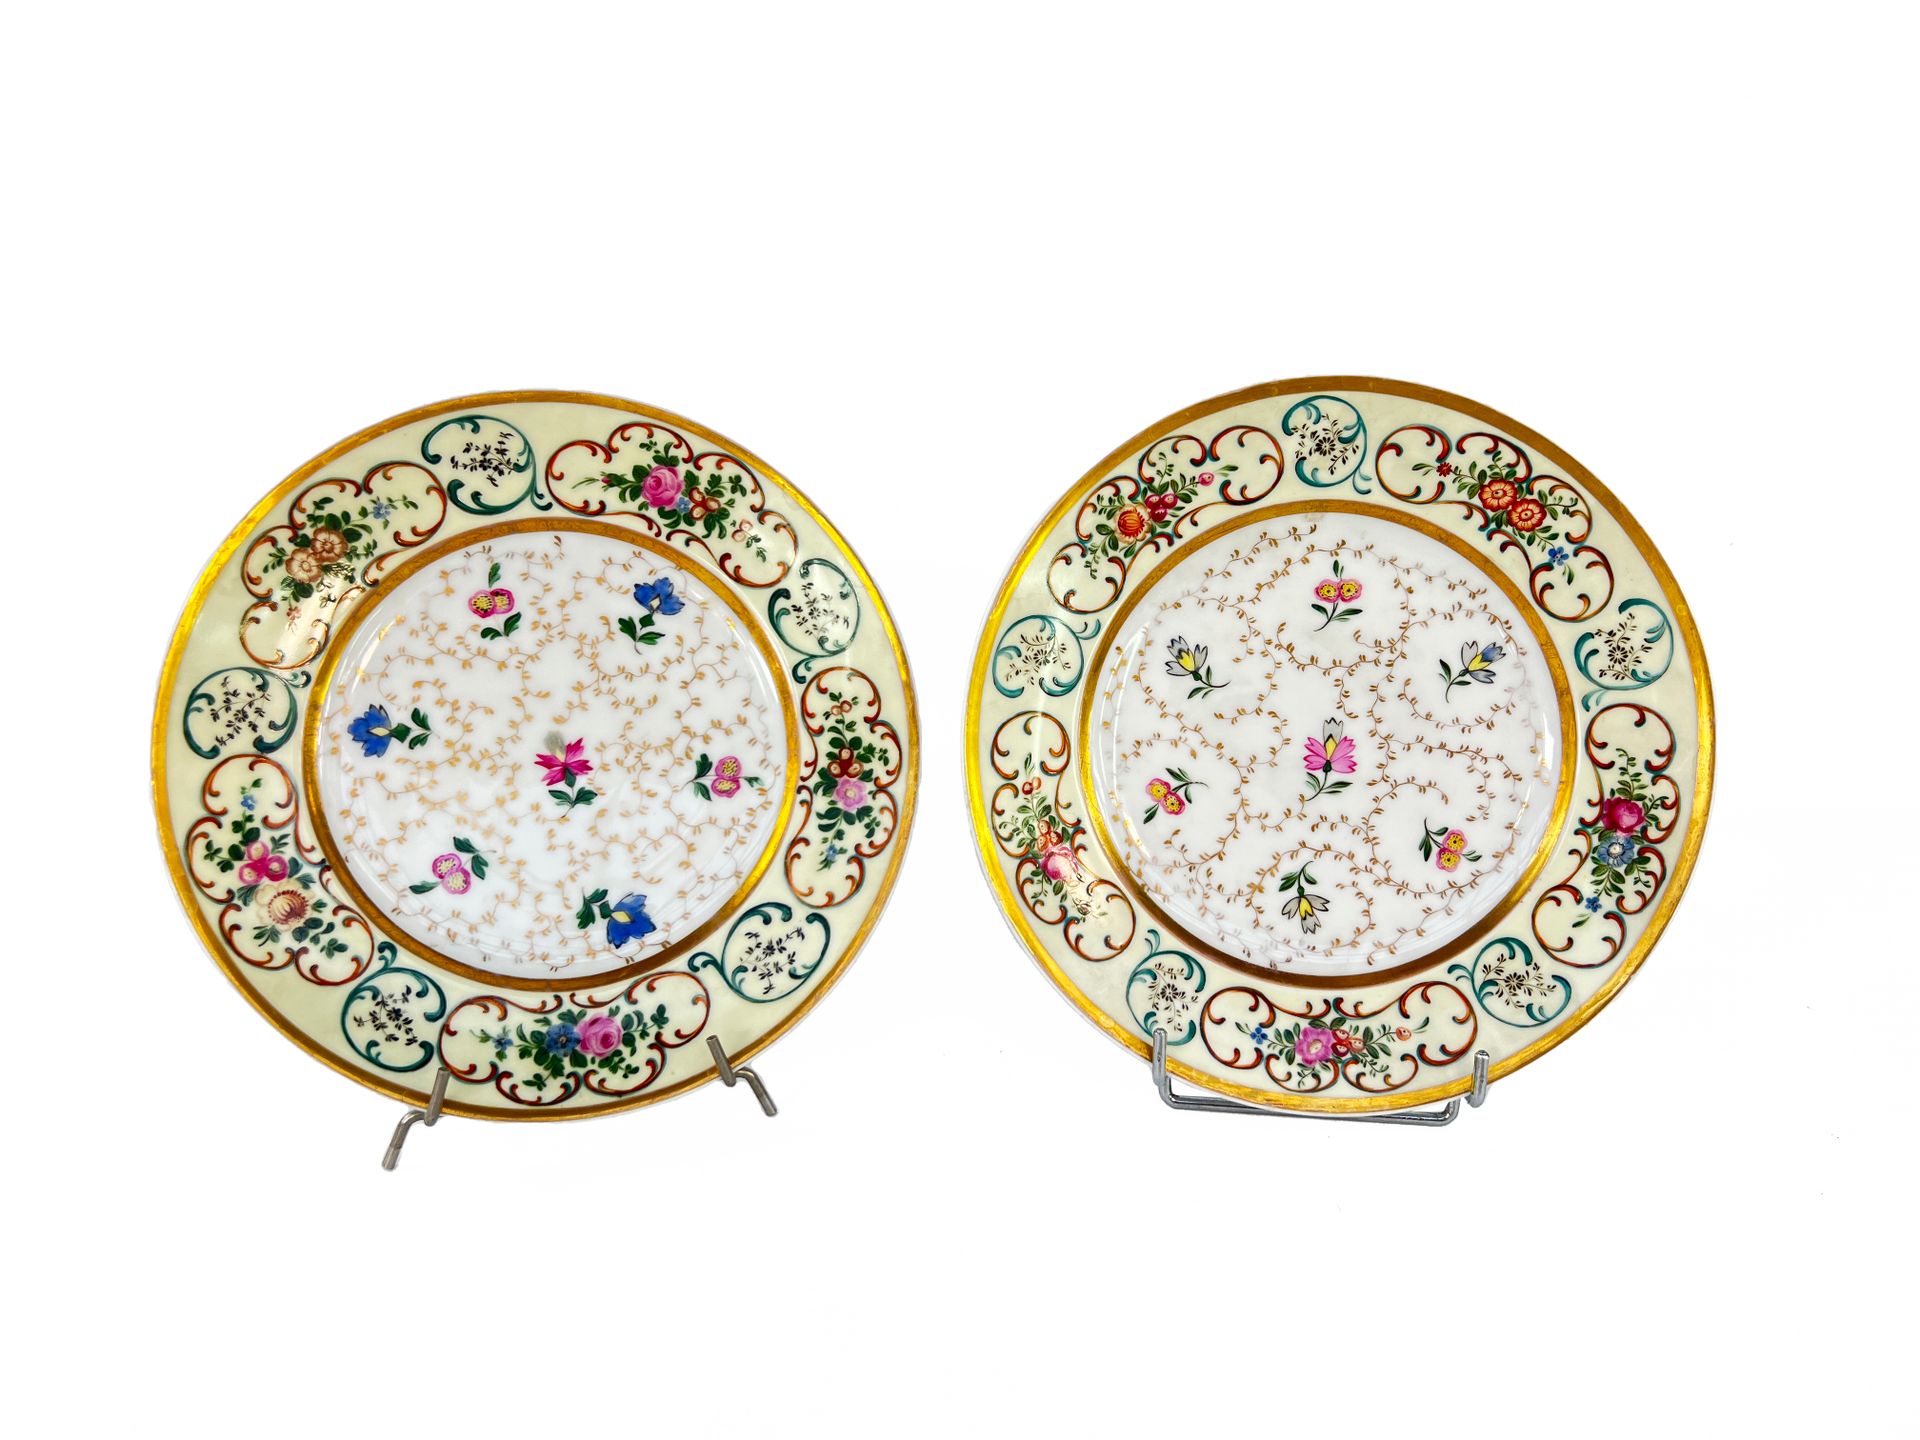 Null MOSCOW, 19世纪

两个瓷盘，上面有花和金叶子的多色装饰。

翅膀上饰有淡黄色背景的花纹图案，金丝边。

底座下标有 "A.P."，代表亚历山&hellip;